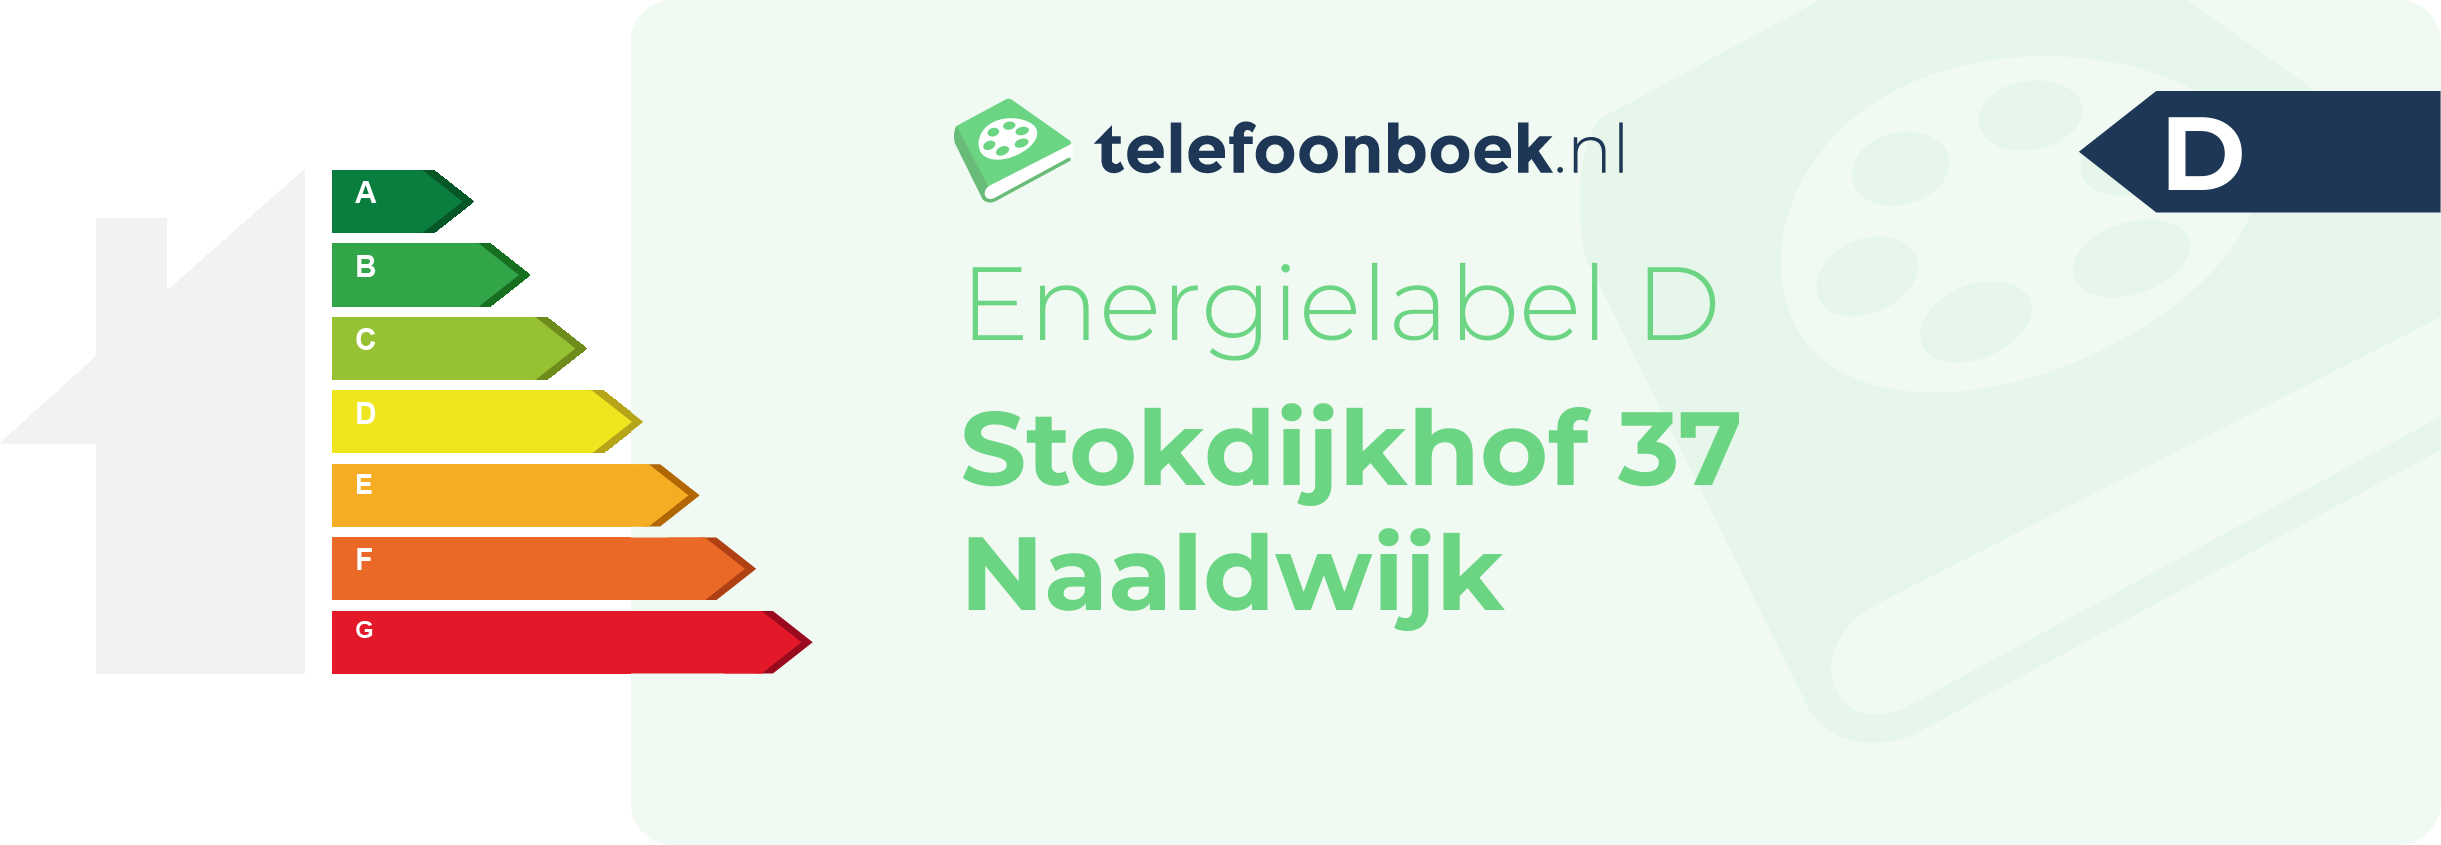 Energielabel Stokdijkhof 37 Naaldwijk